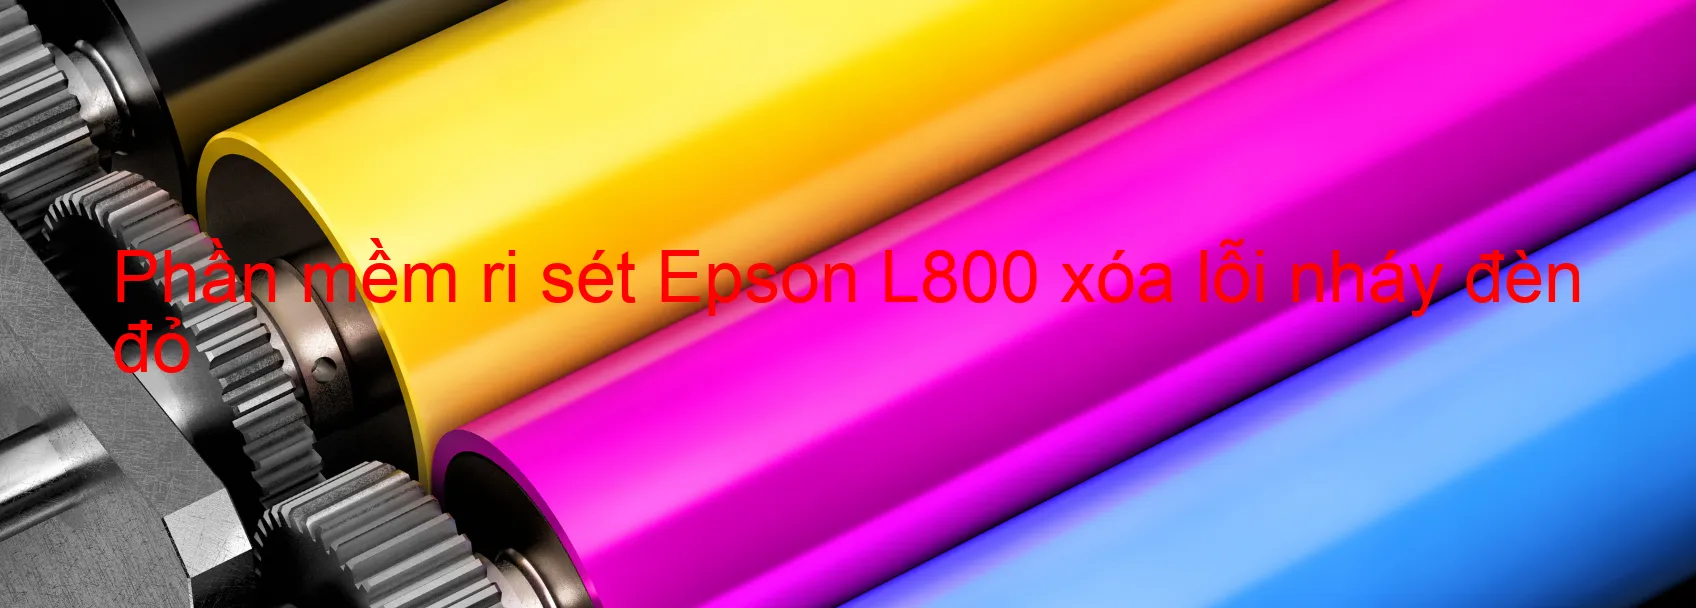 Phần mềm reset Epson L800 xóa lỗi nháy đèn đỏ